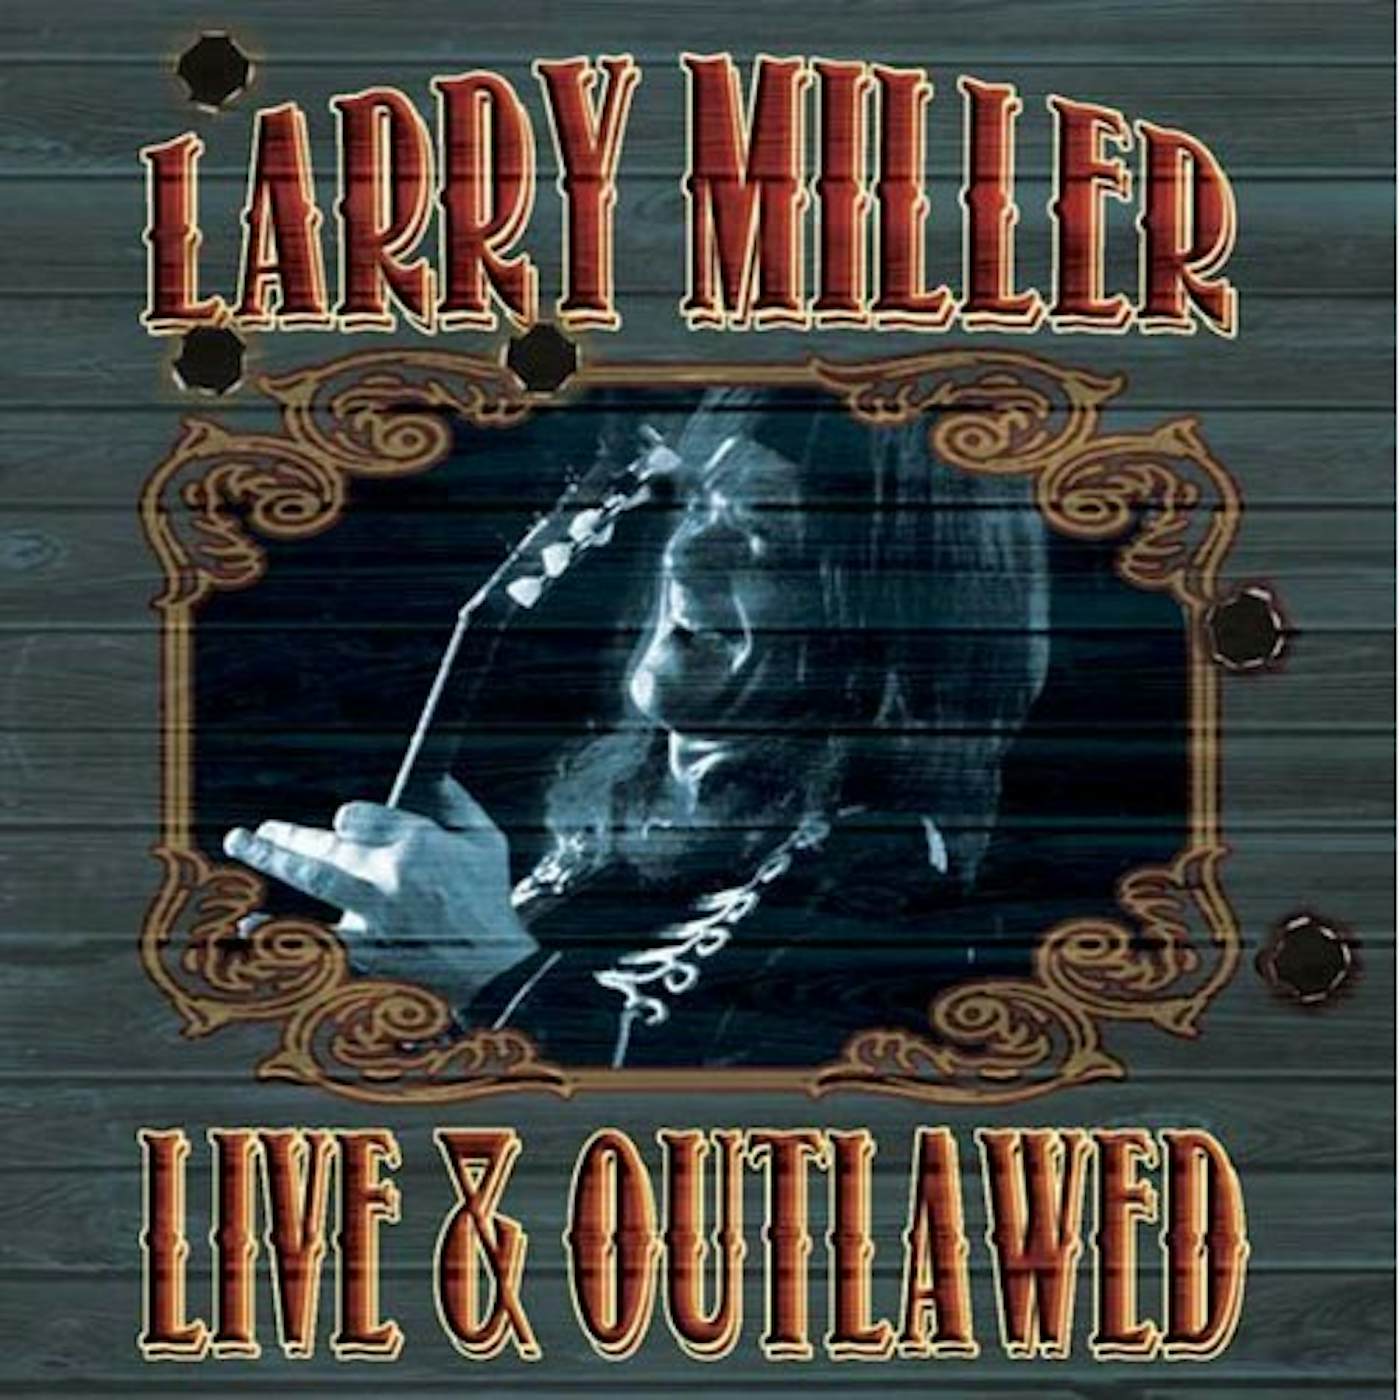 Larry Miller LIVE & OUTLAWED CD